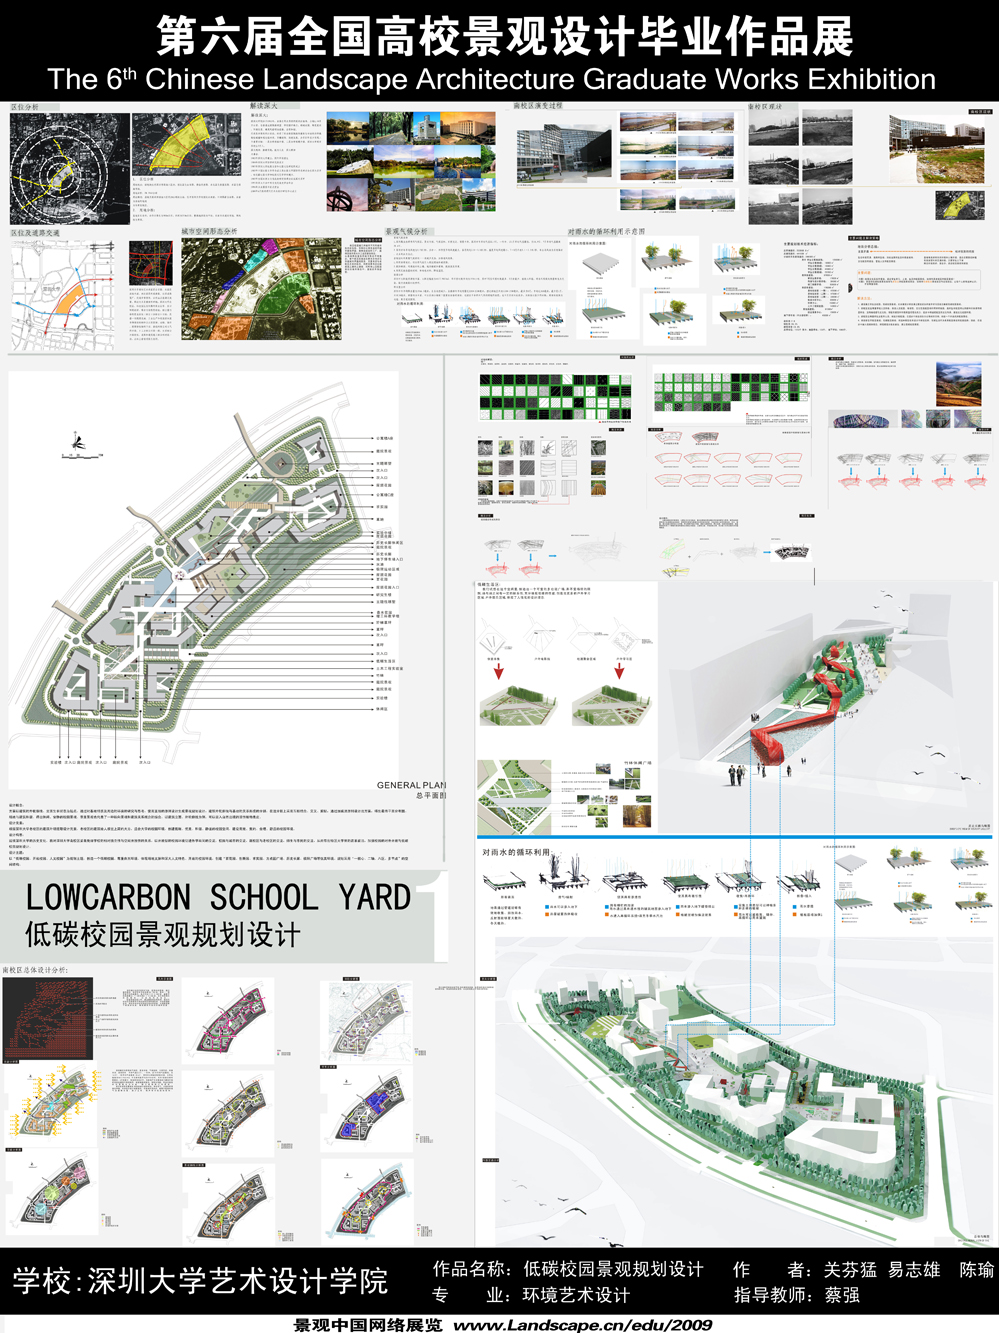 低碳校园景观规划设计-1